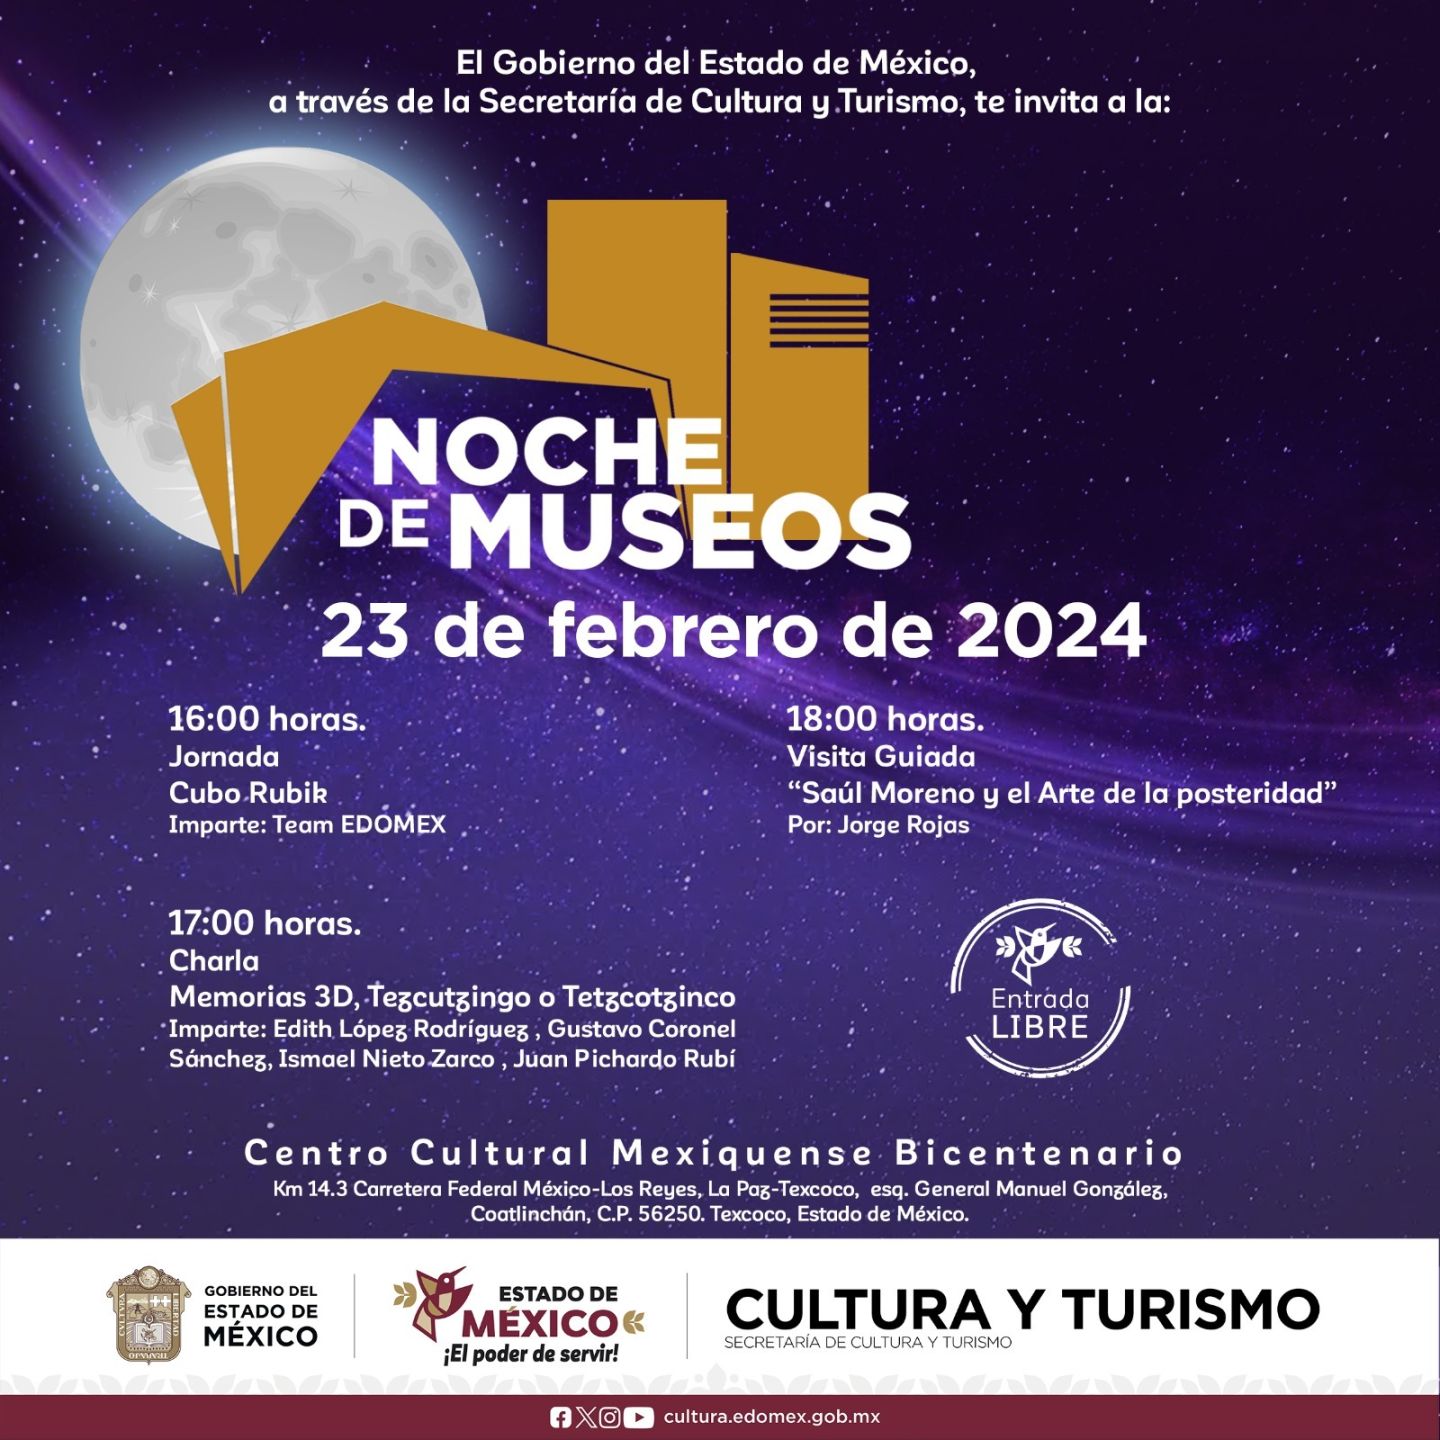 Prepara Centro Cultural Mexiquense Bicentenario en Texcoco, Noche de Museos de febrero